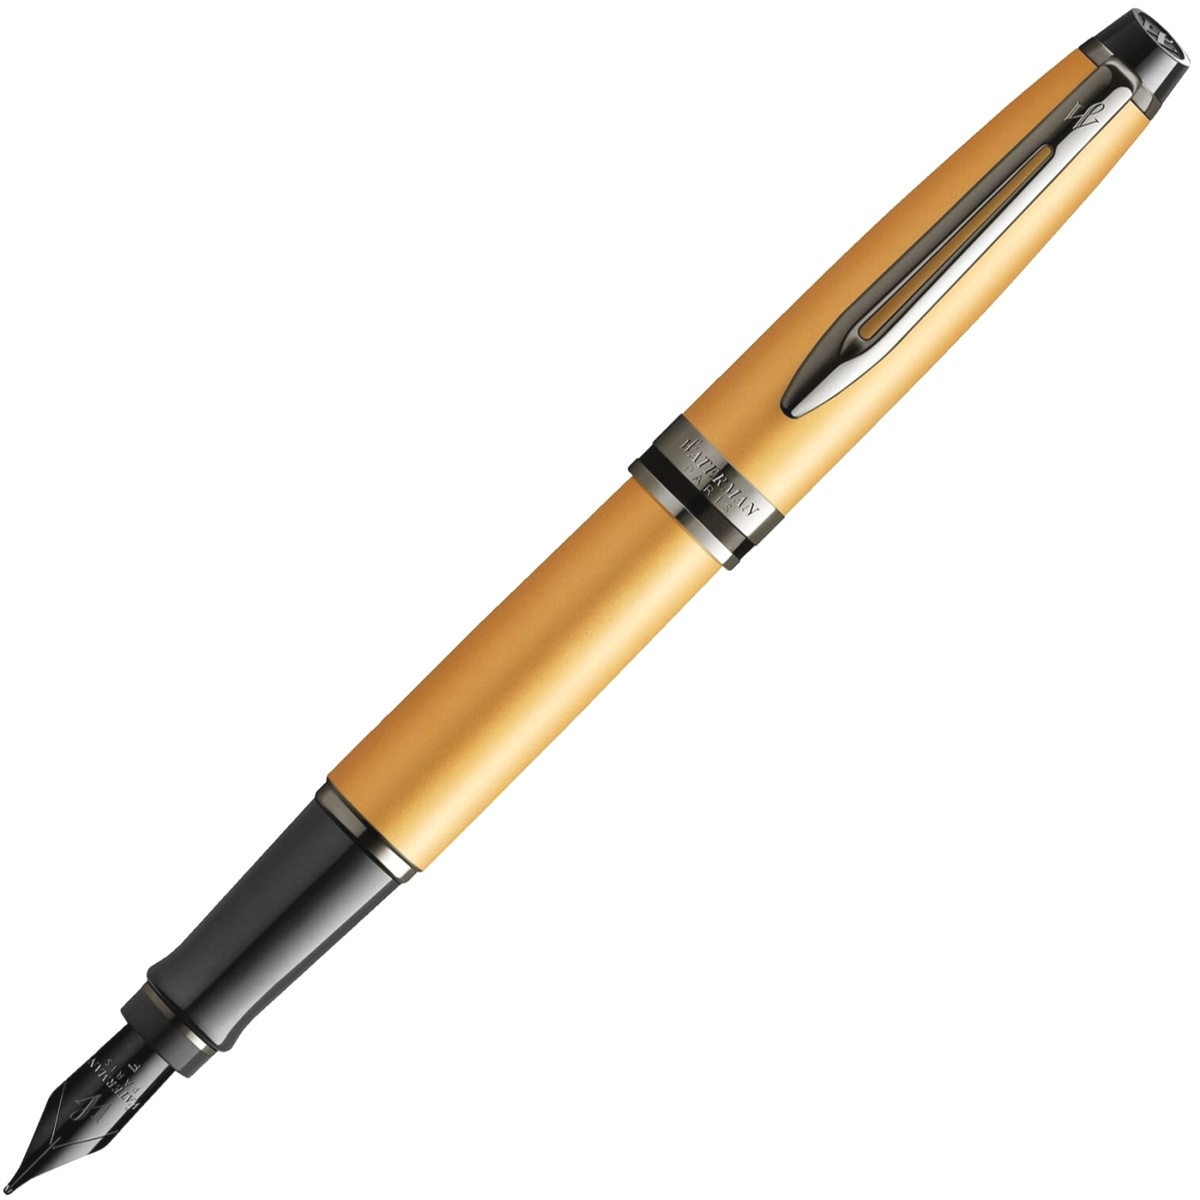  Ручка перьевая Waterman Expert DeLuxe, Metallic Gold RT (Перо F)